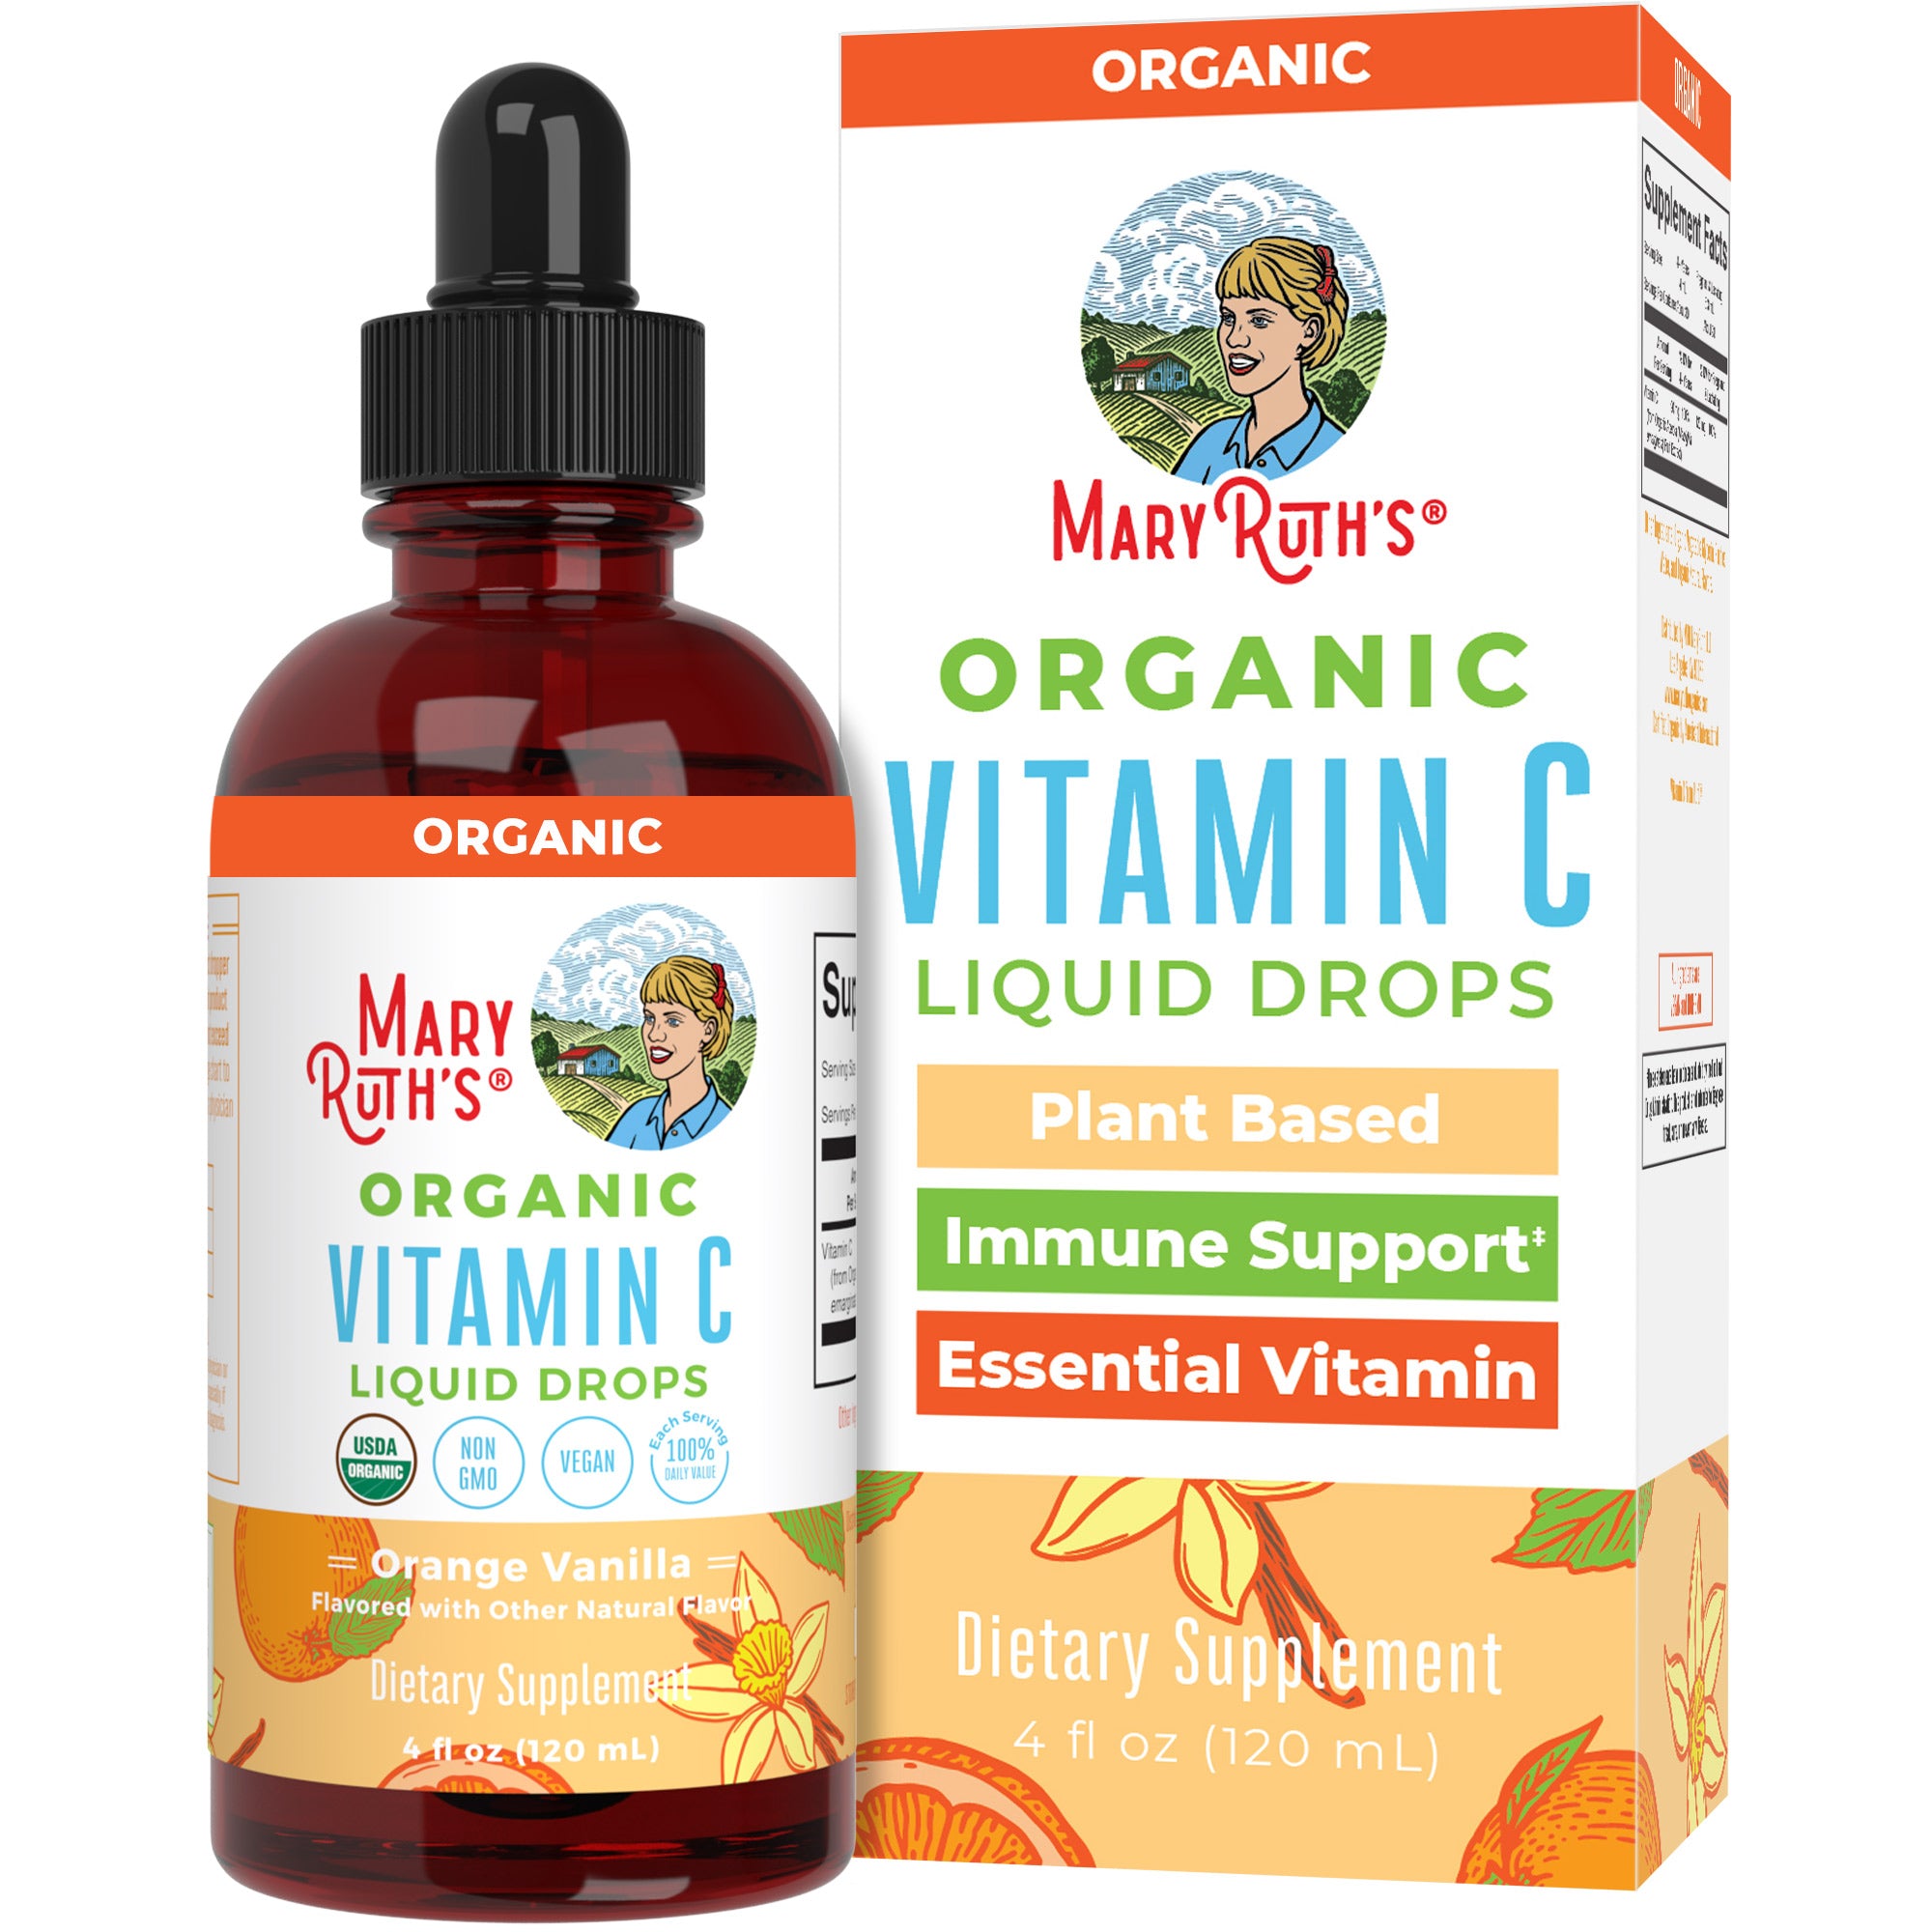 Organic Vitamin C Liquid Drops